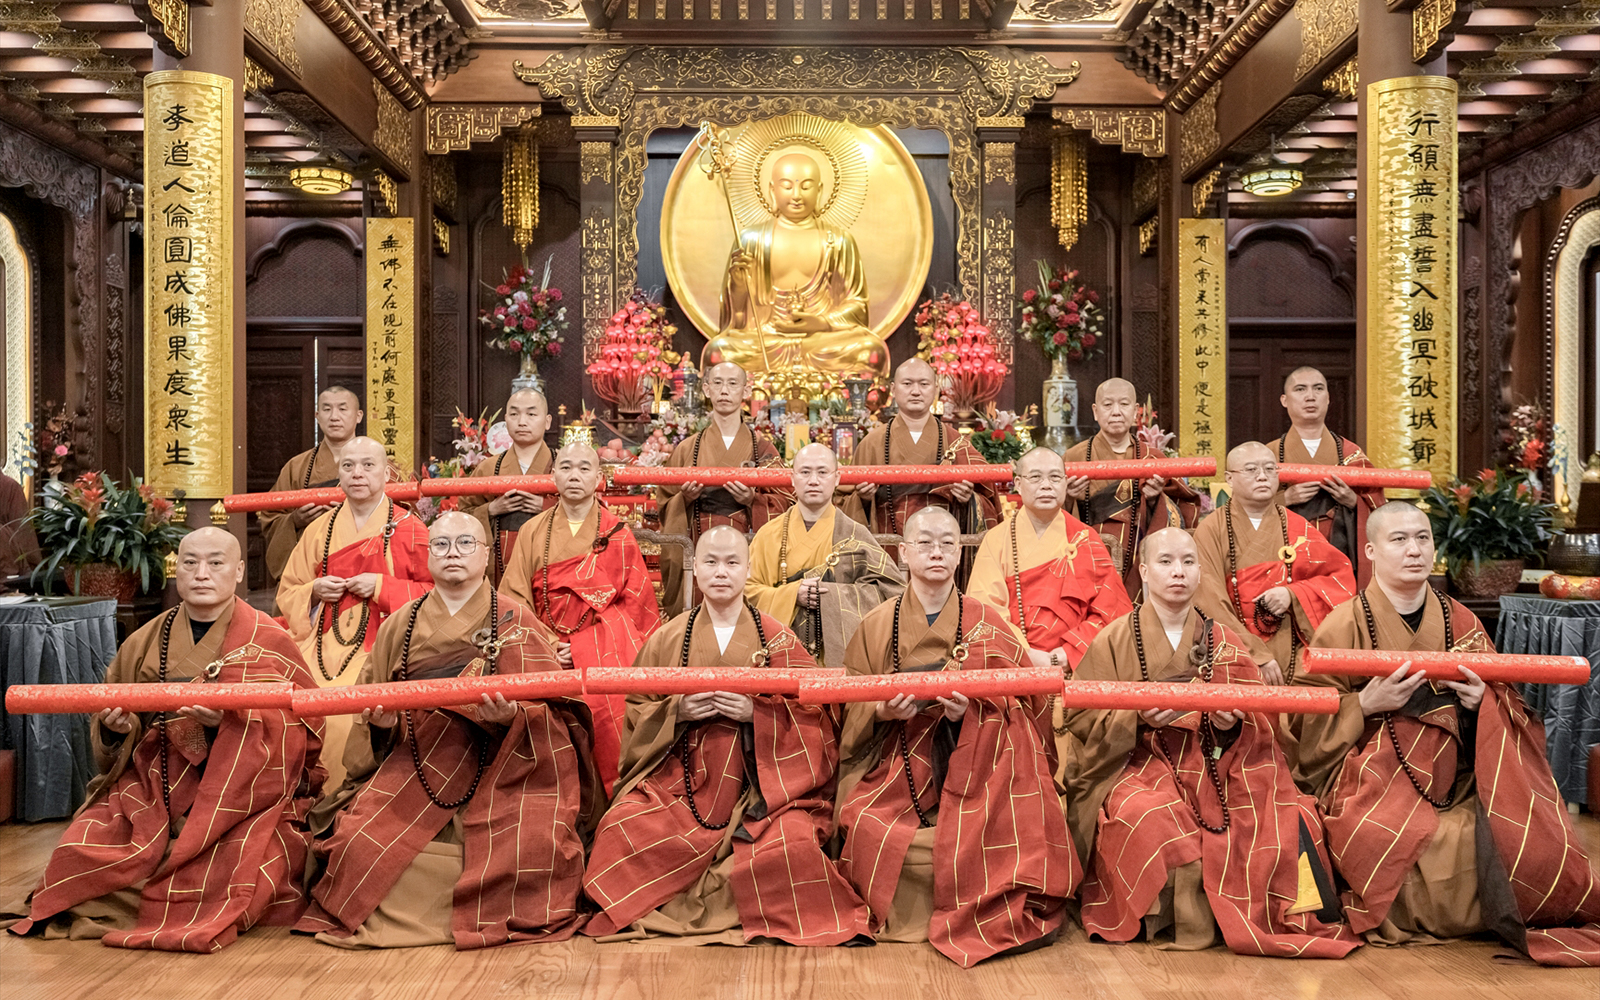 上海地藏古寺举行临济、曹洞宗传法大典